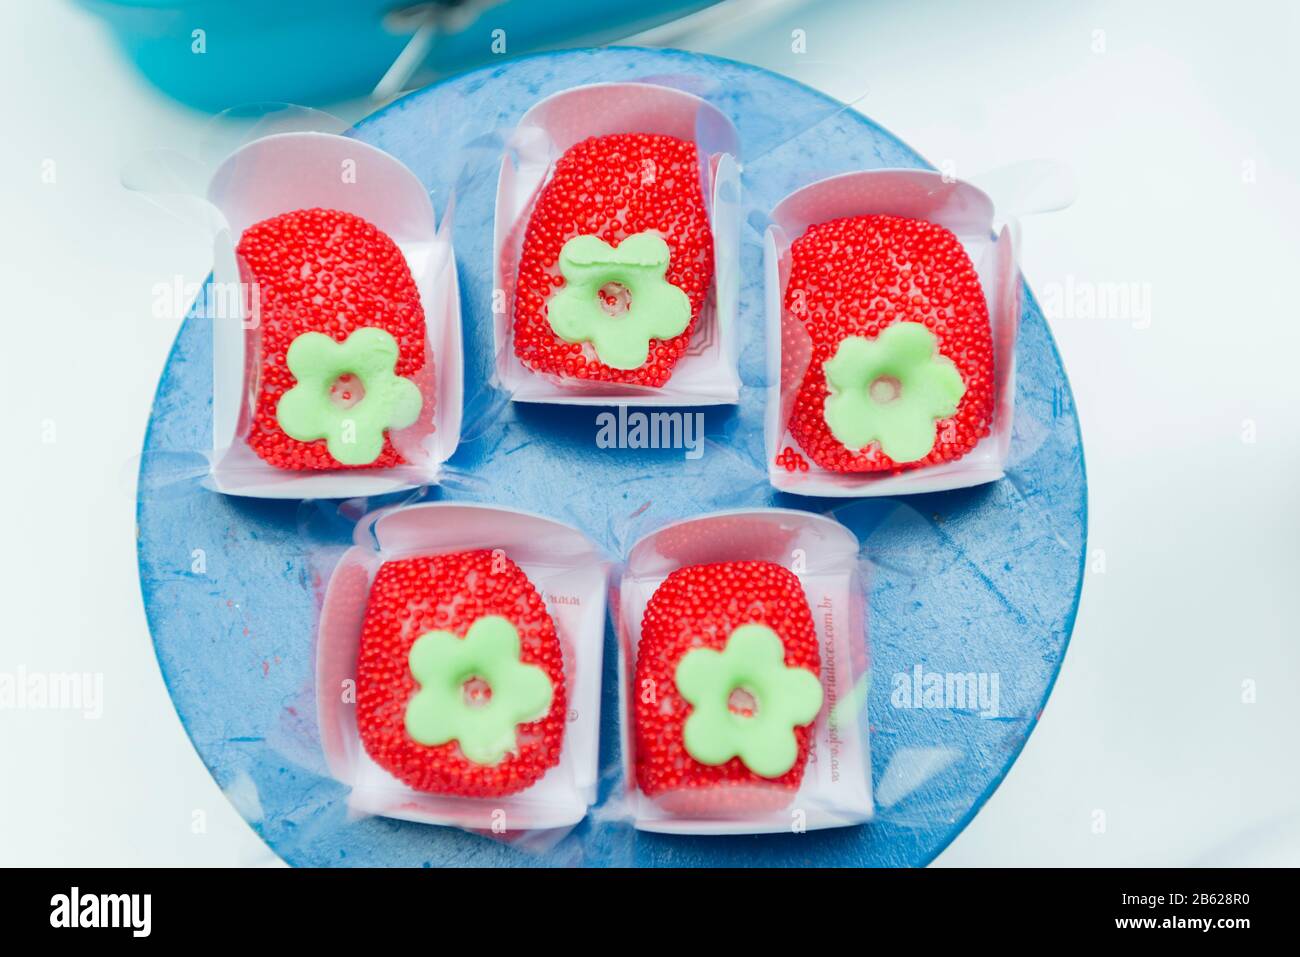 Bonbons de fête pour enfants en forme de fraise. Bonbons saupoudrés rouges dans une boîte en papier blanc sur un plateau bleu avec peu de profondeur de champ. Mise au point sélective. Banque D'Images